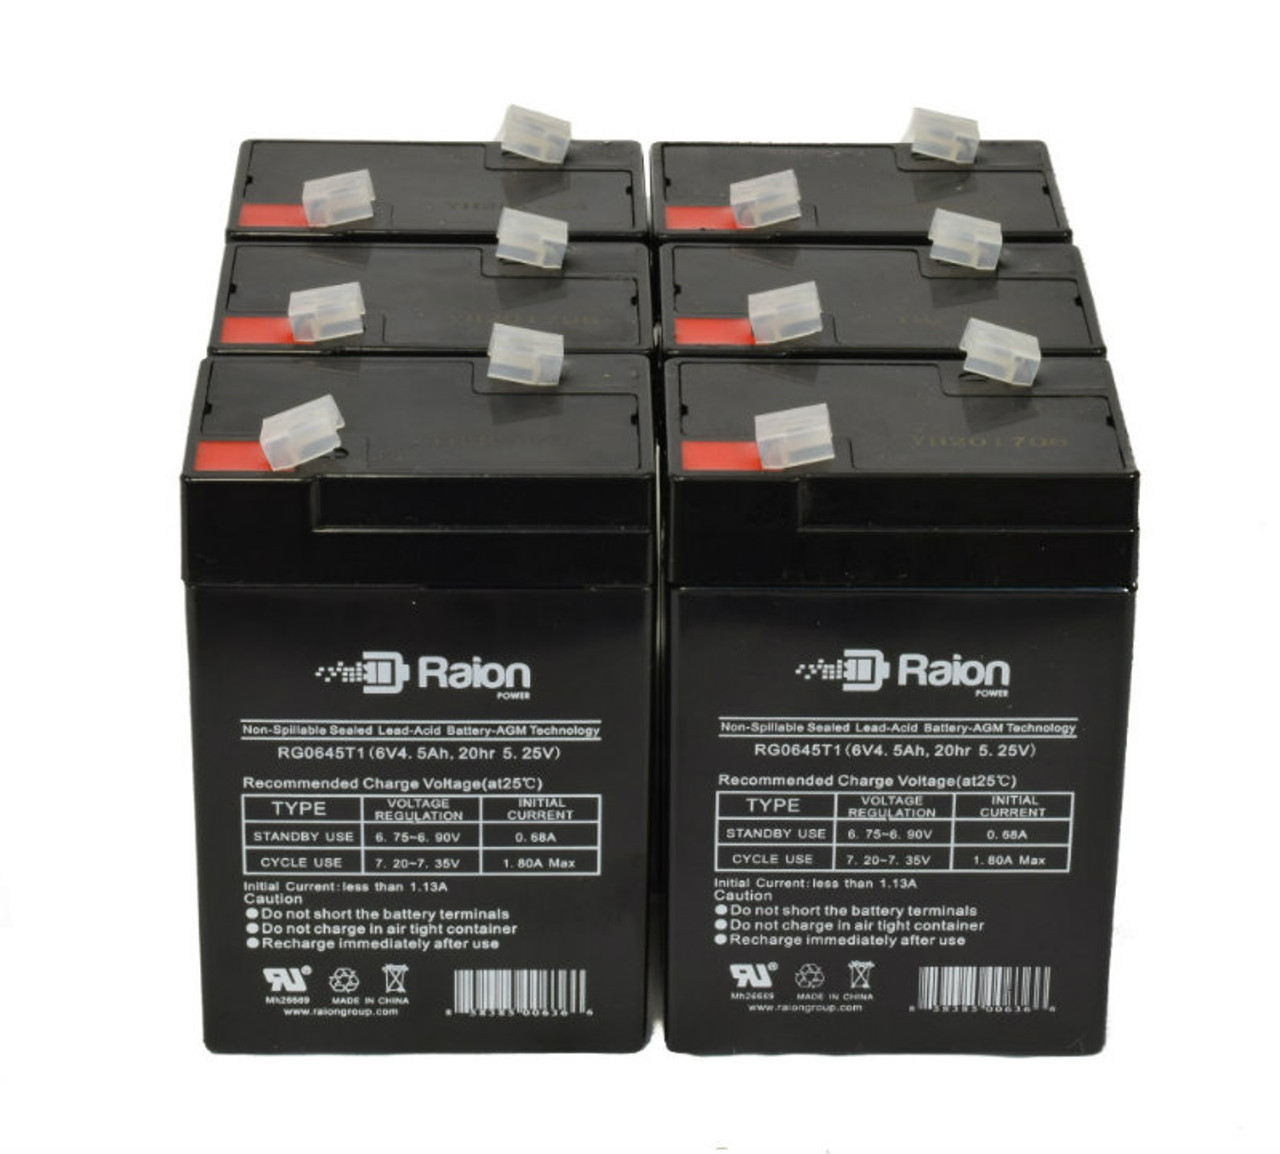 Raion Power 6 Volt 4.5Ah RG0645T1 Replacement Battery for Sonnenschein 3TX2K - 6 Pack